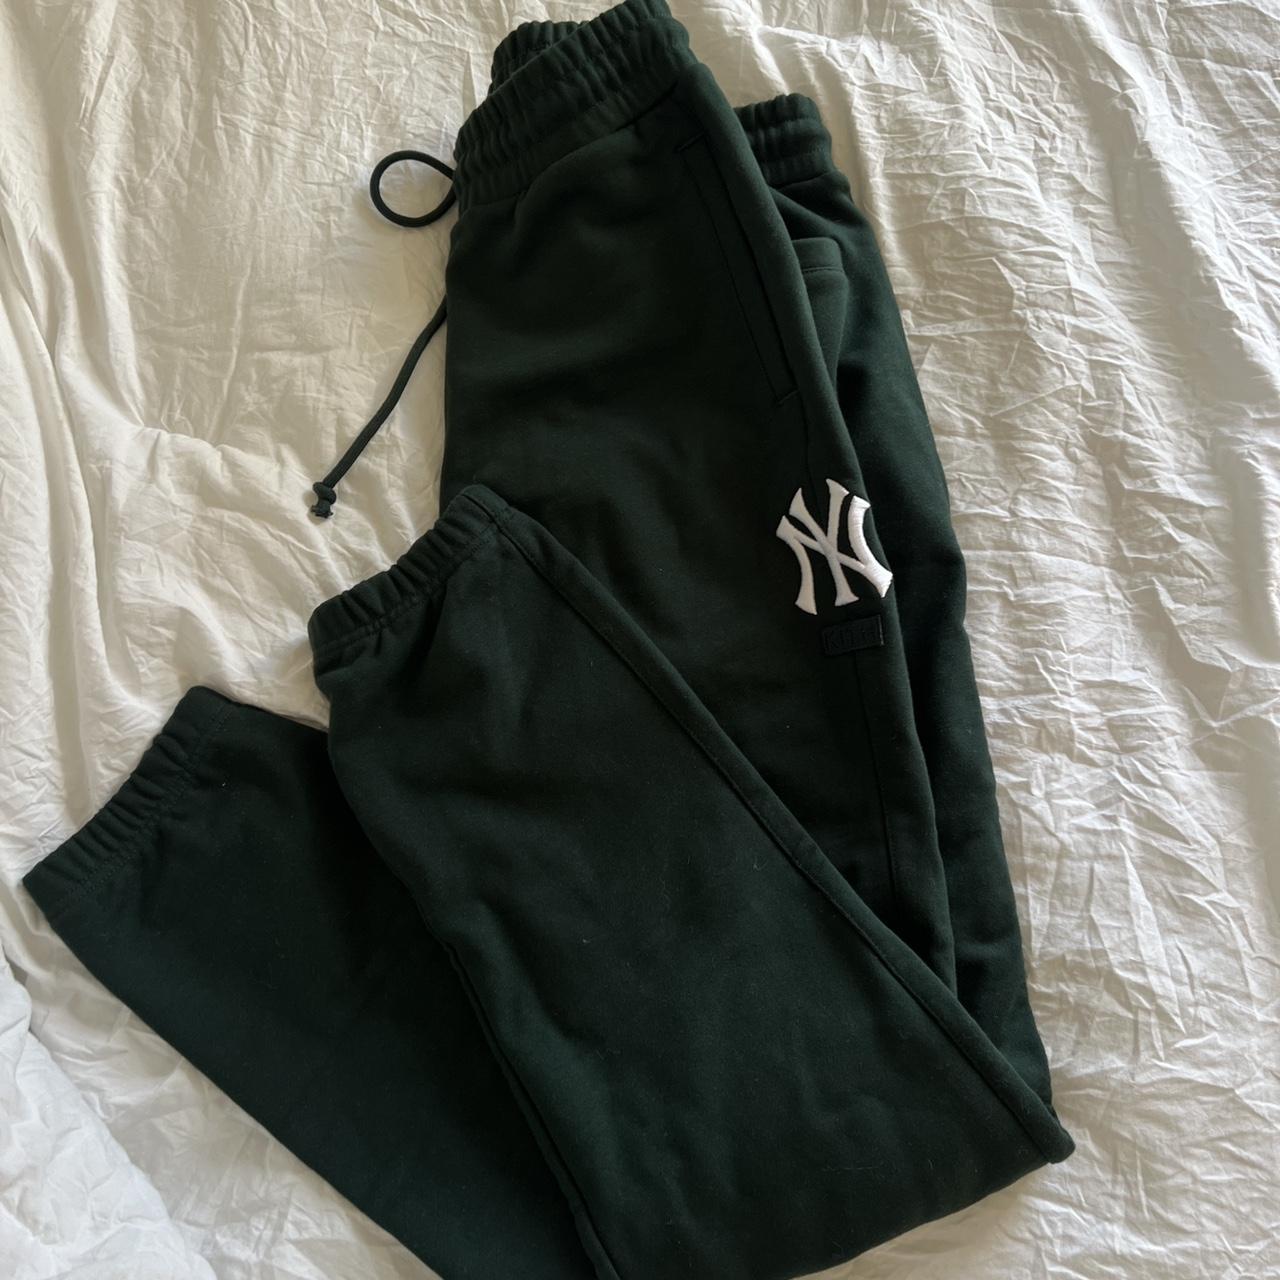 Kith x MLB New York Yankees T shirt - white - size - Depop